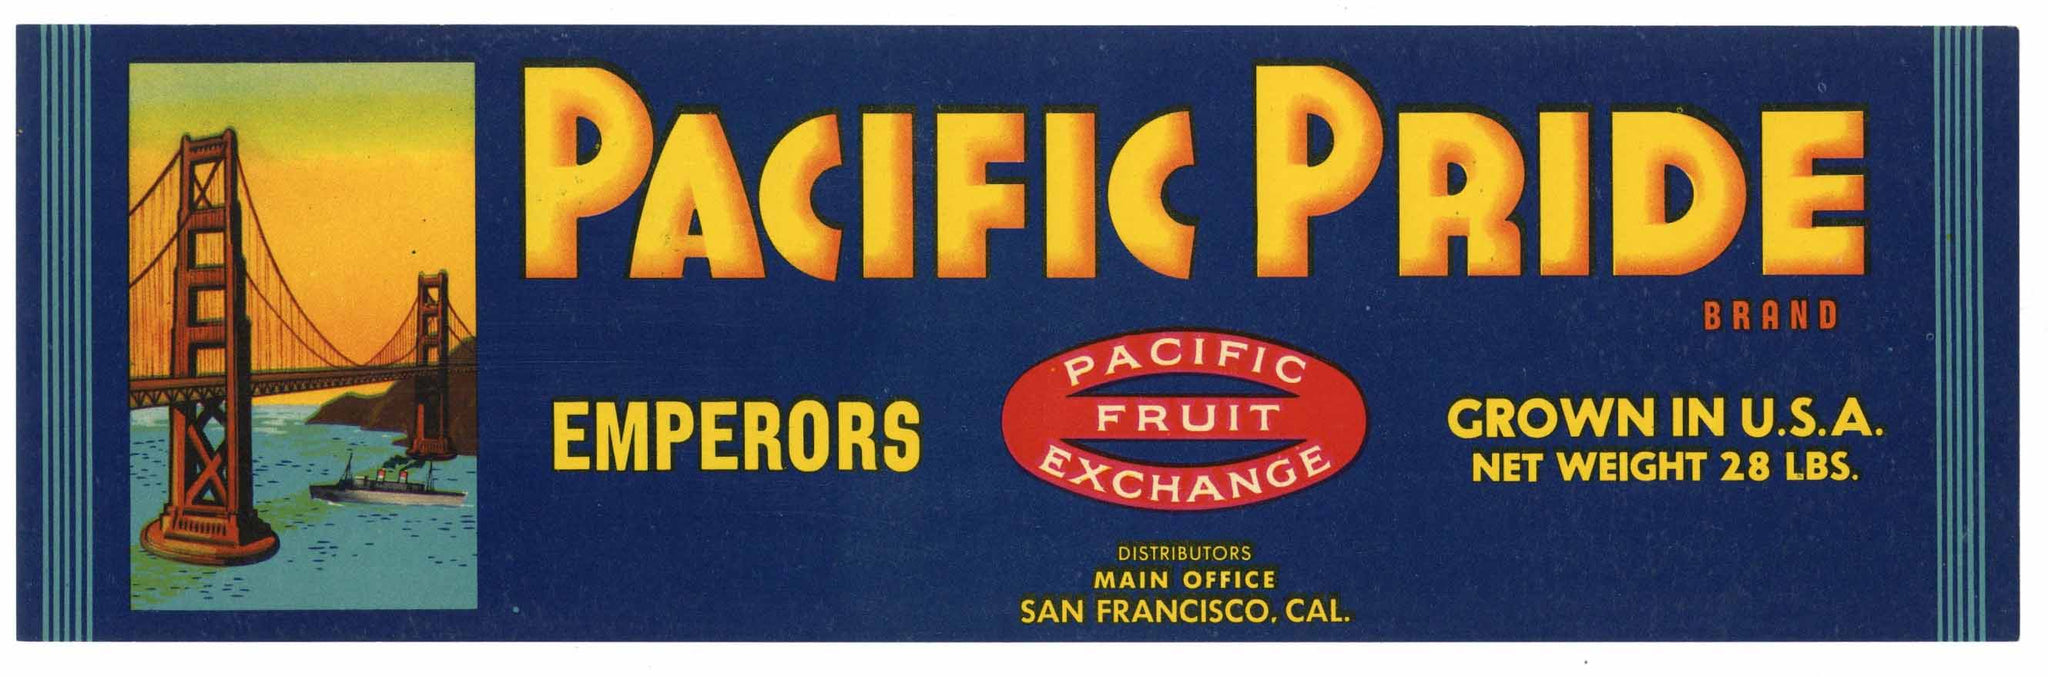 Pacific Pride Brand Vintage Grape Crate Label, n